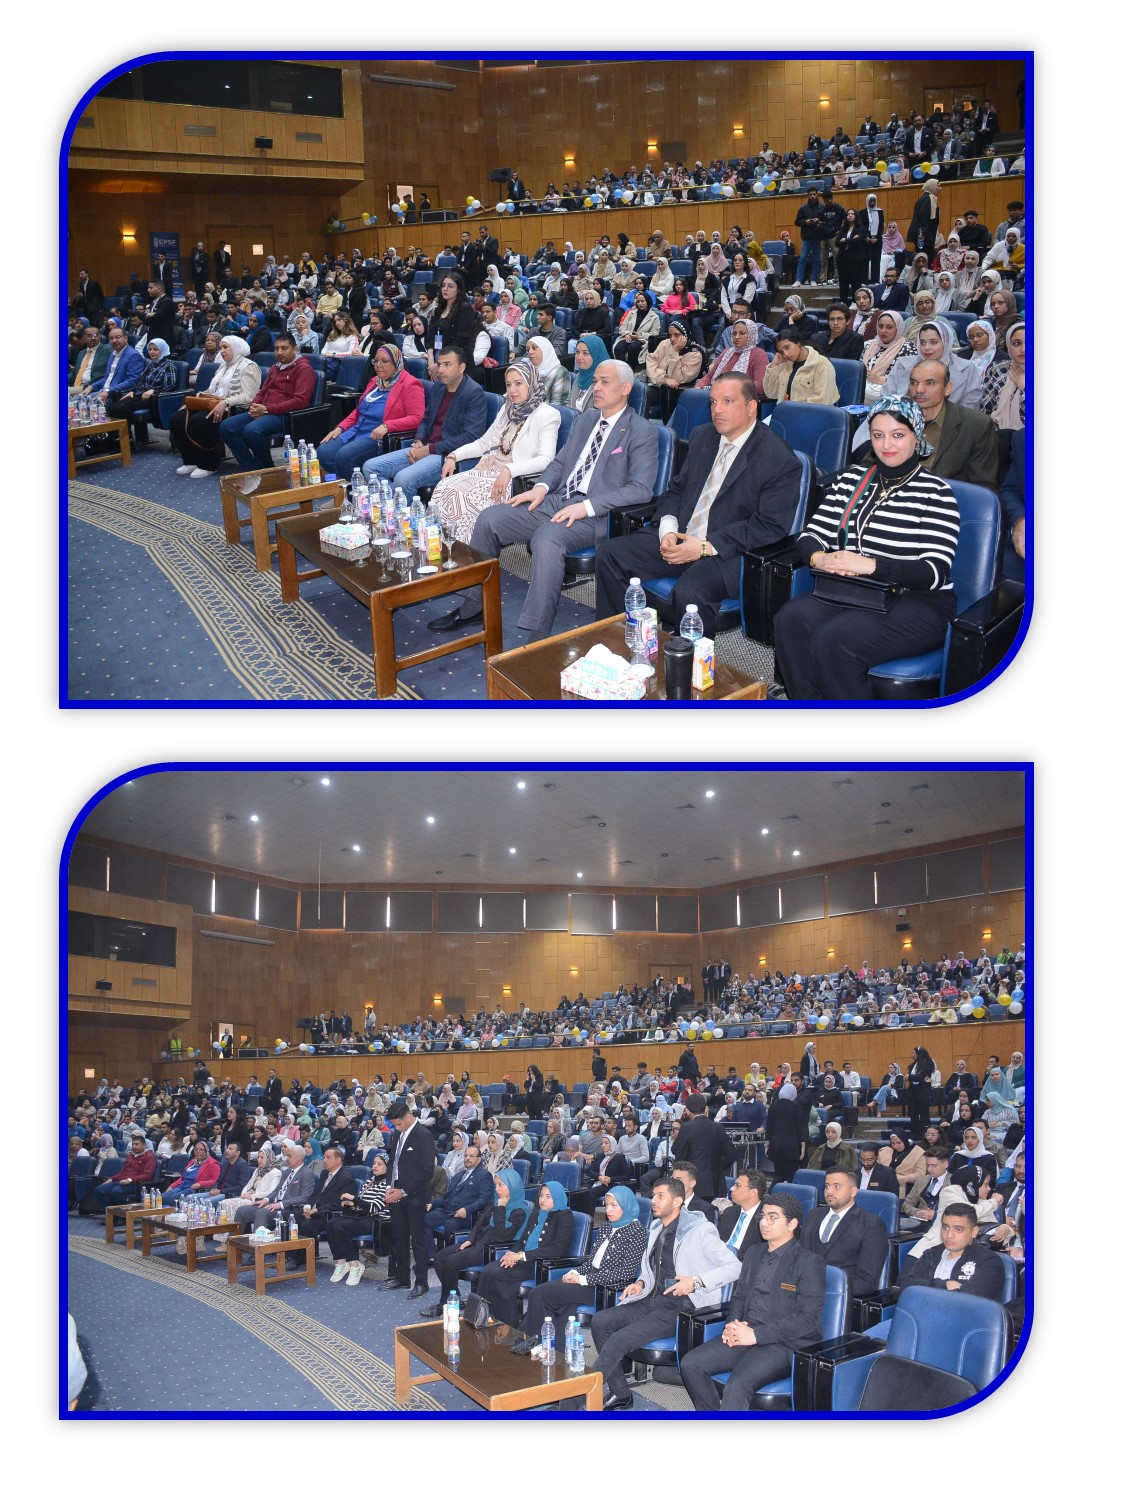 صور المؤتمر العلمى الثالث والعشرون للإتحاد المصرى لطلاب كلية الصيدلة - بجامعة أسيوط